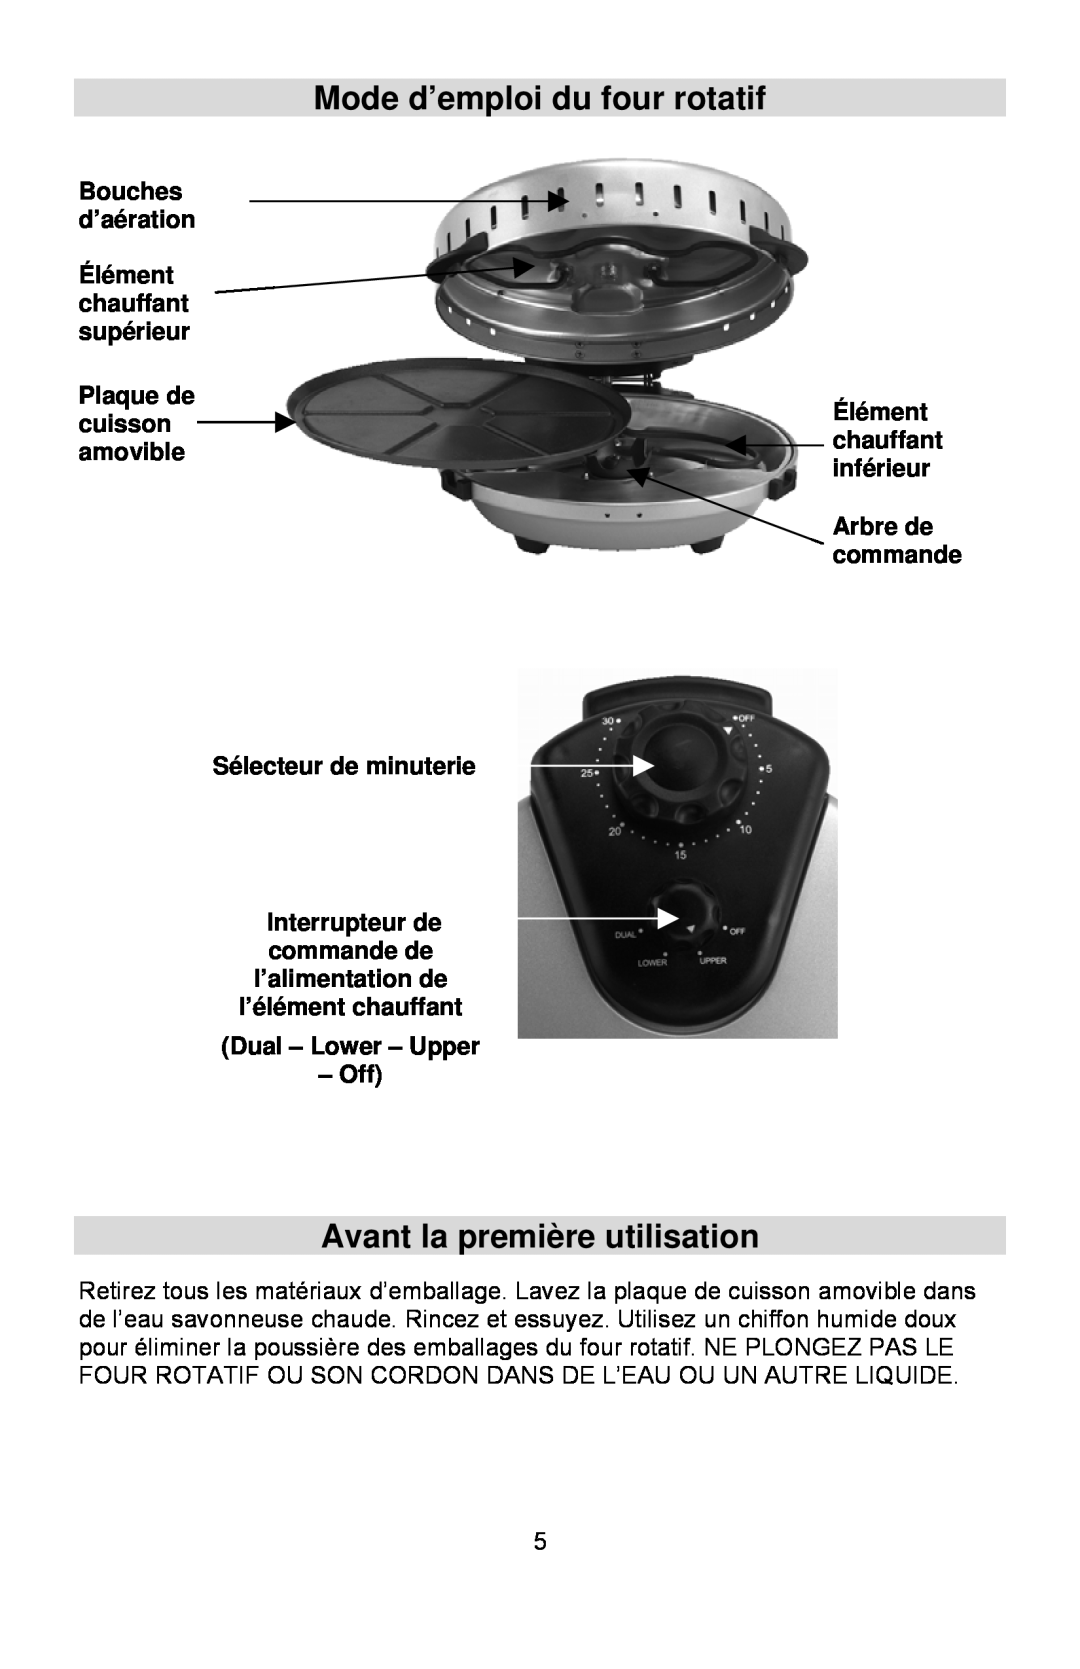 West Bend Rotisserie Oven instruction manual Mode d’emploi du four rotatif, Avant la première utilisation 